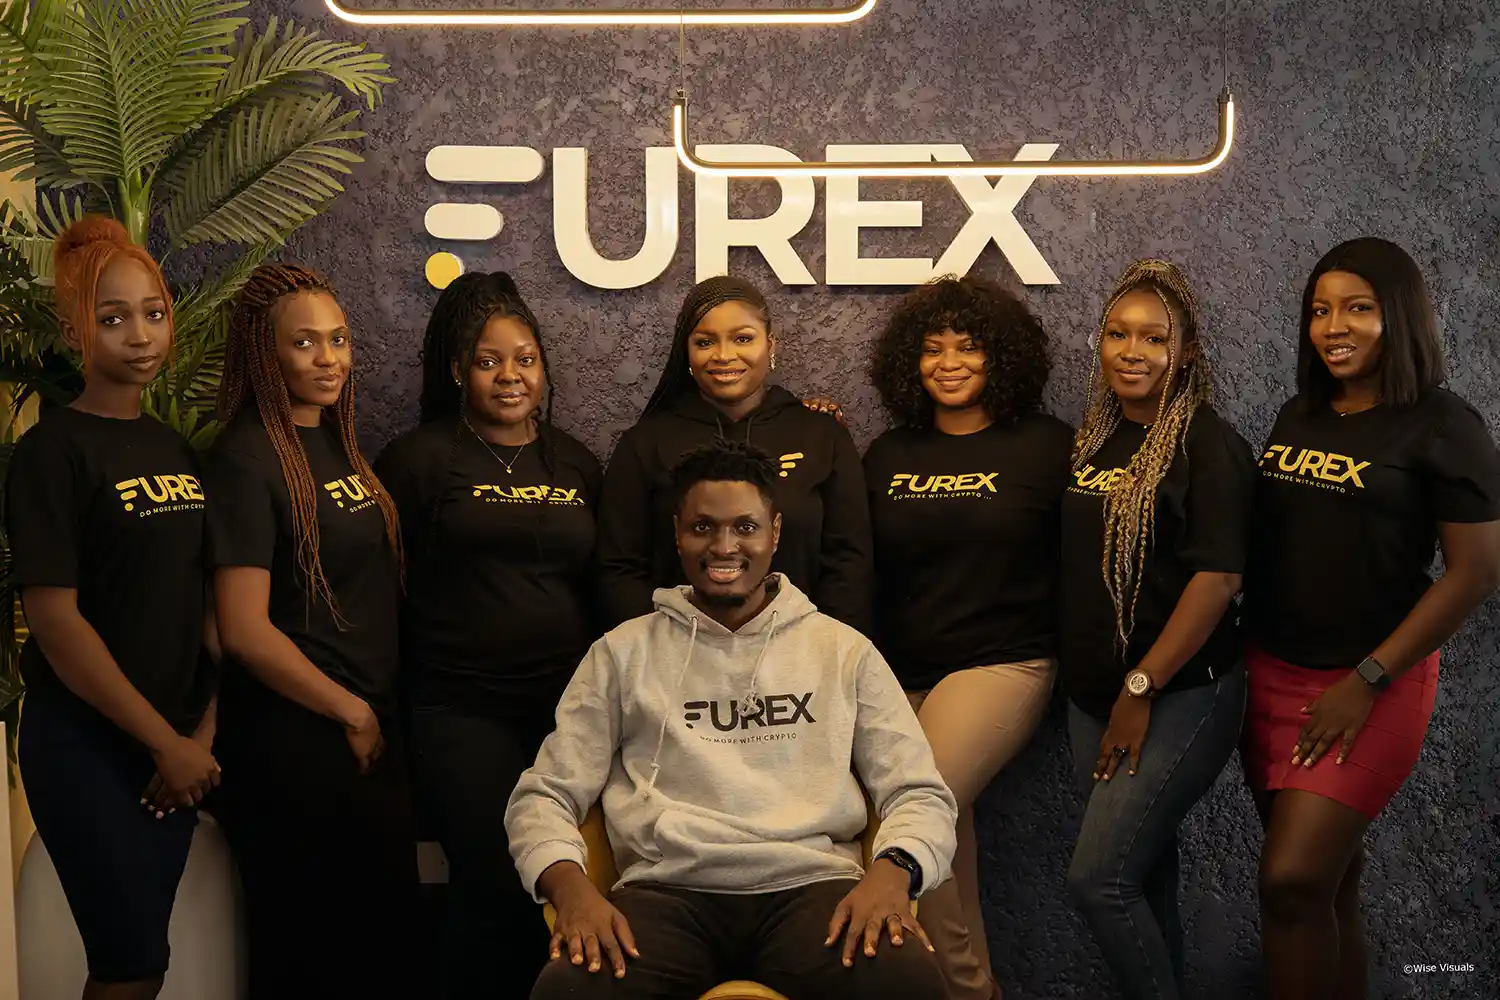 Meet the furex team